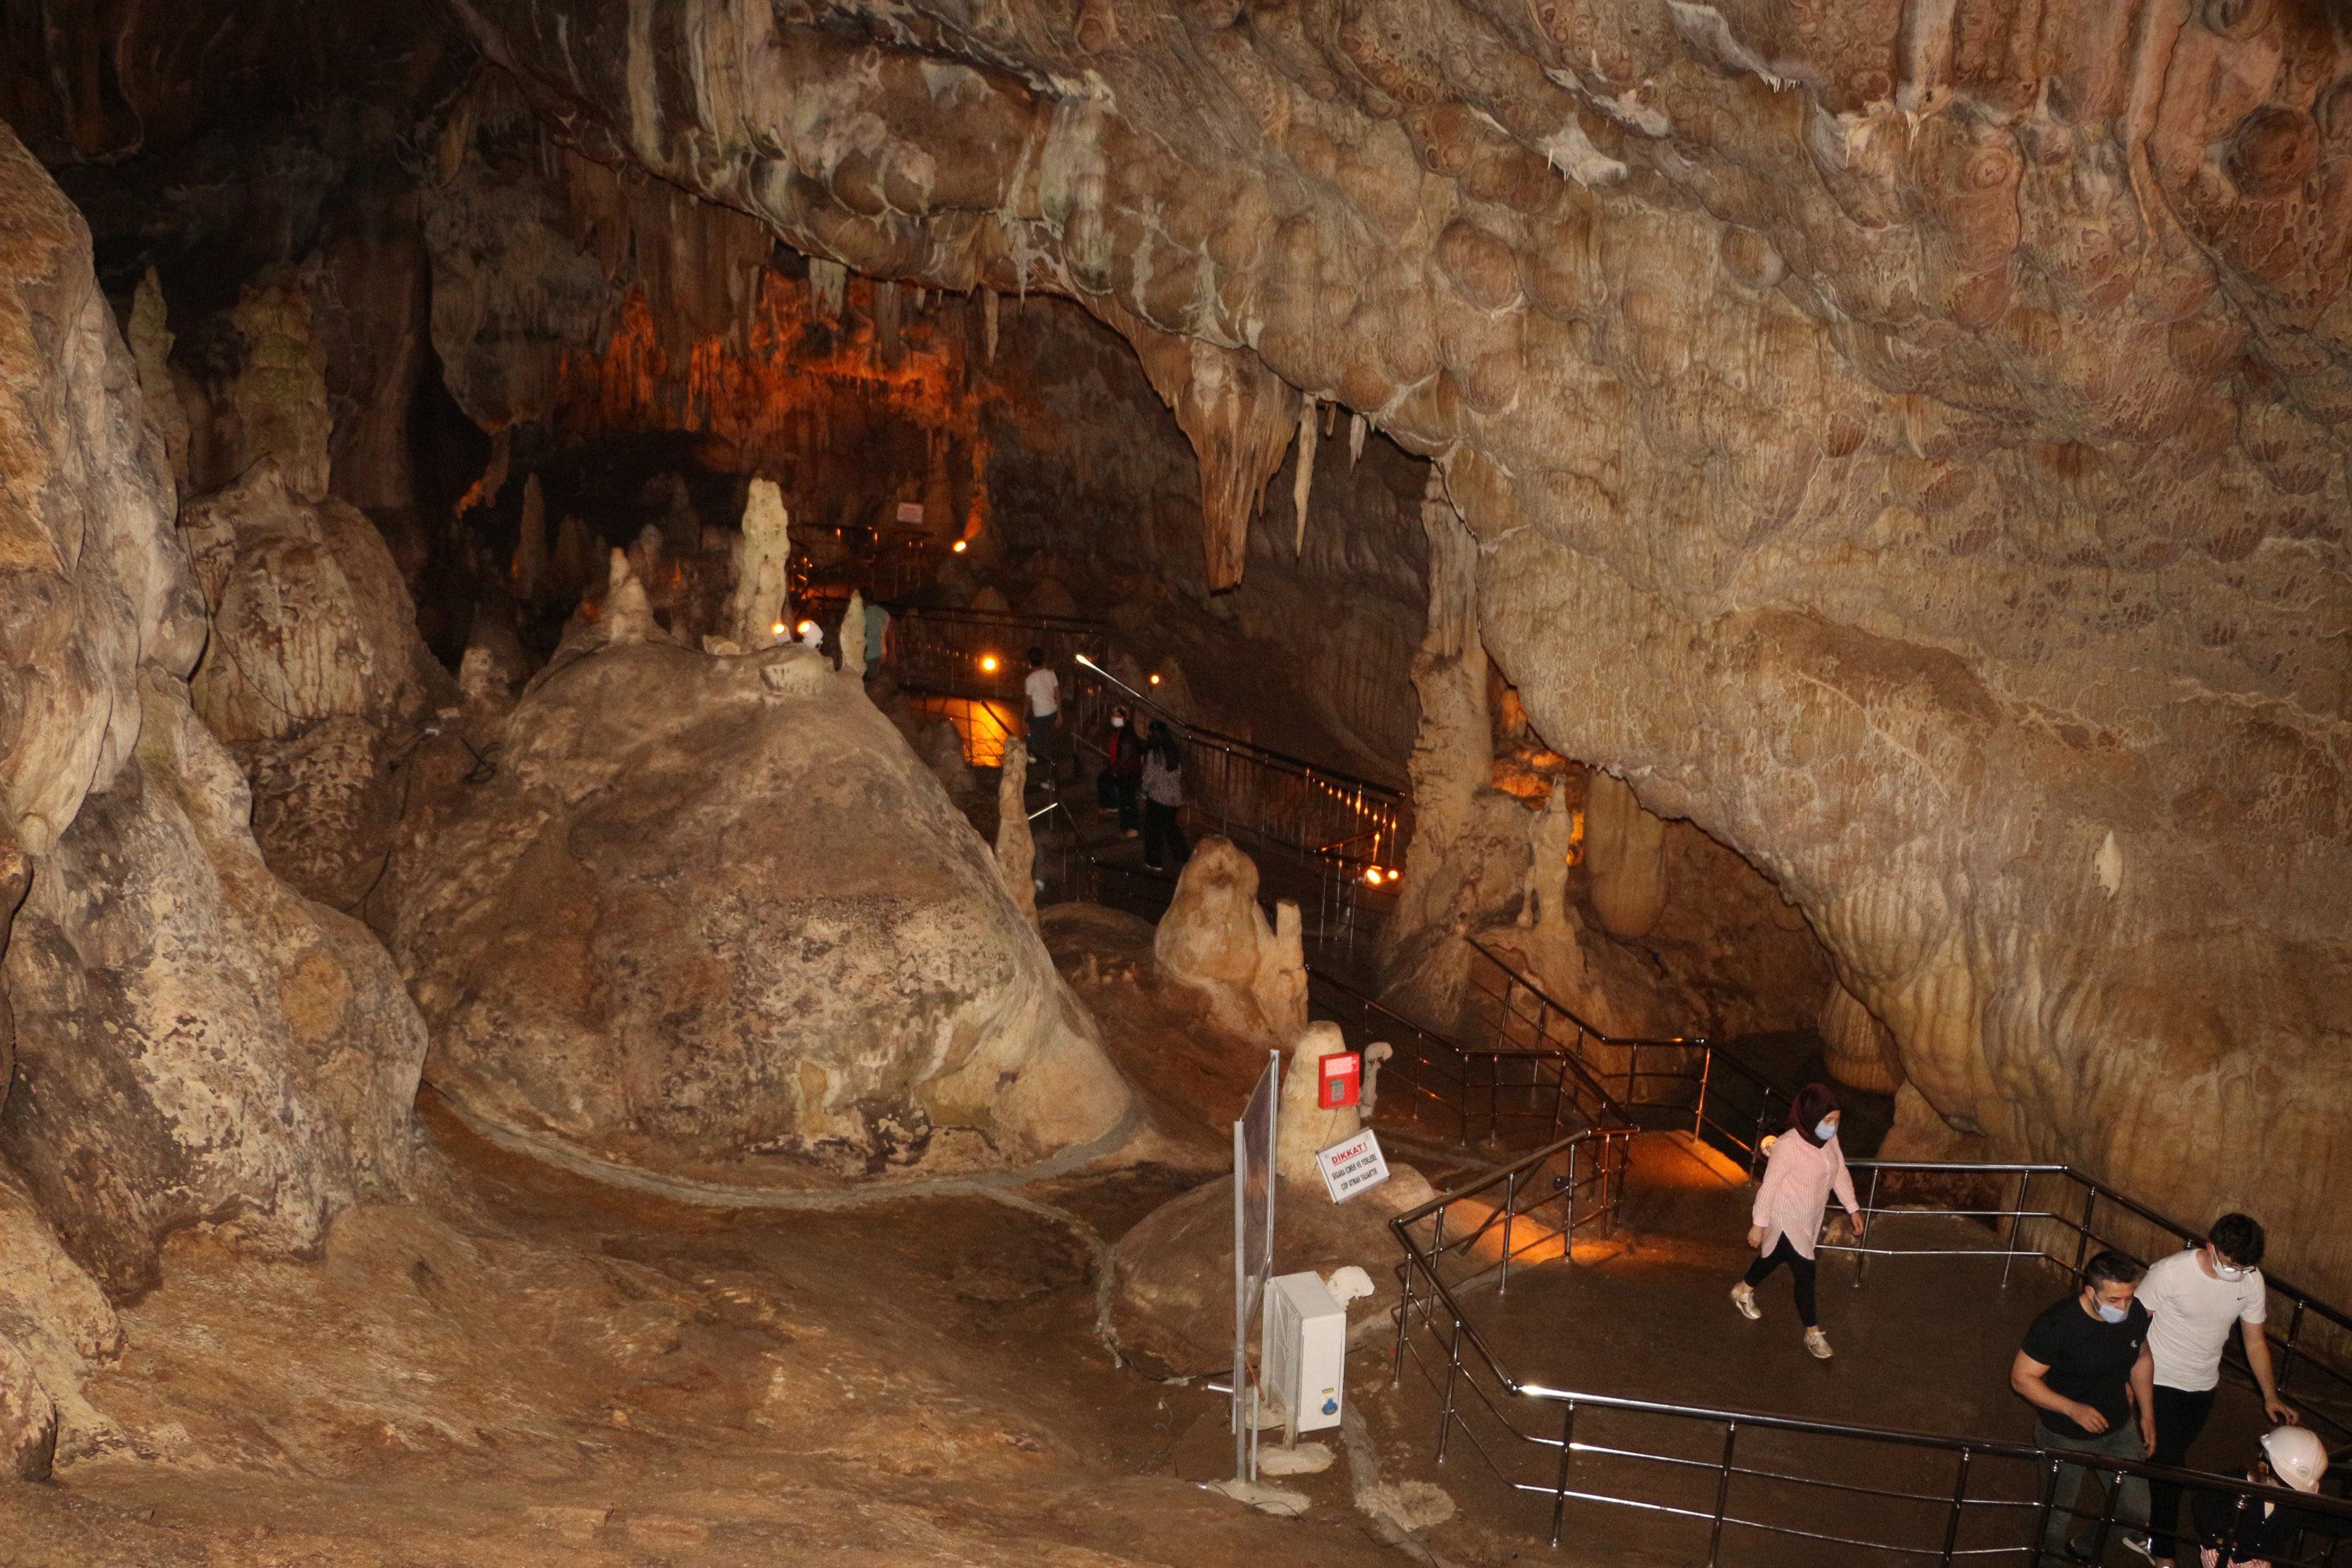 Ballıca Mağarası'nı bayramda 16 bin 200 kişi ziyaret etti